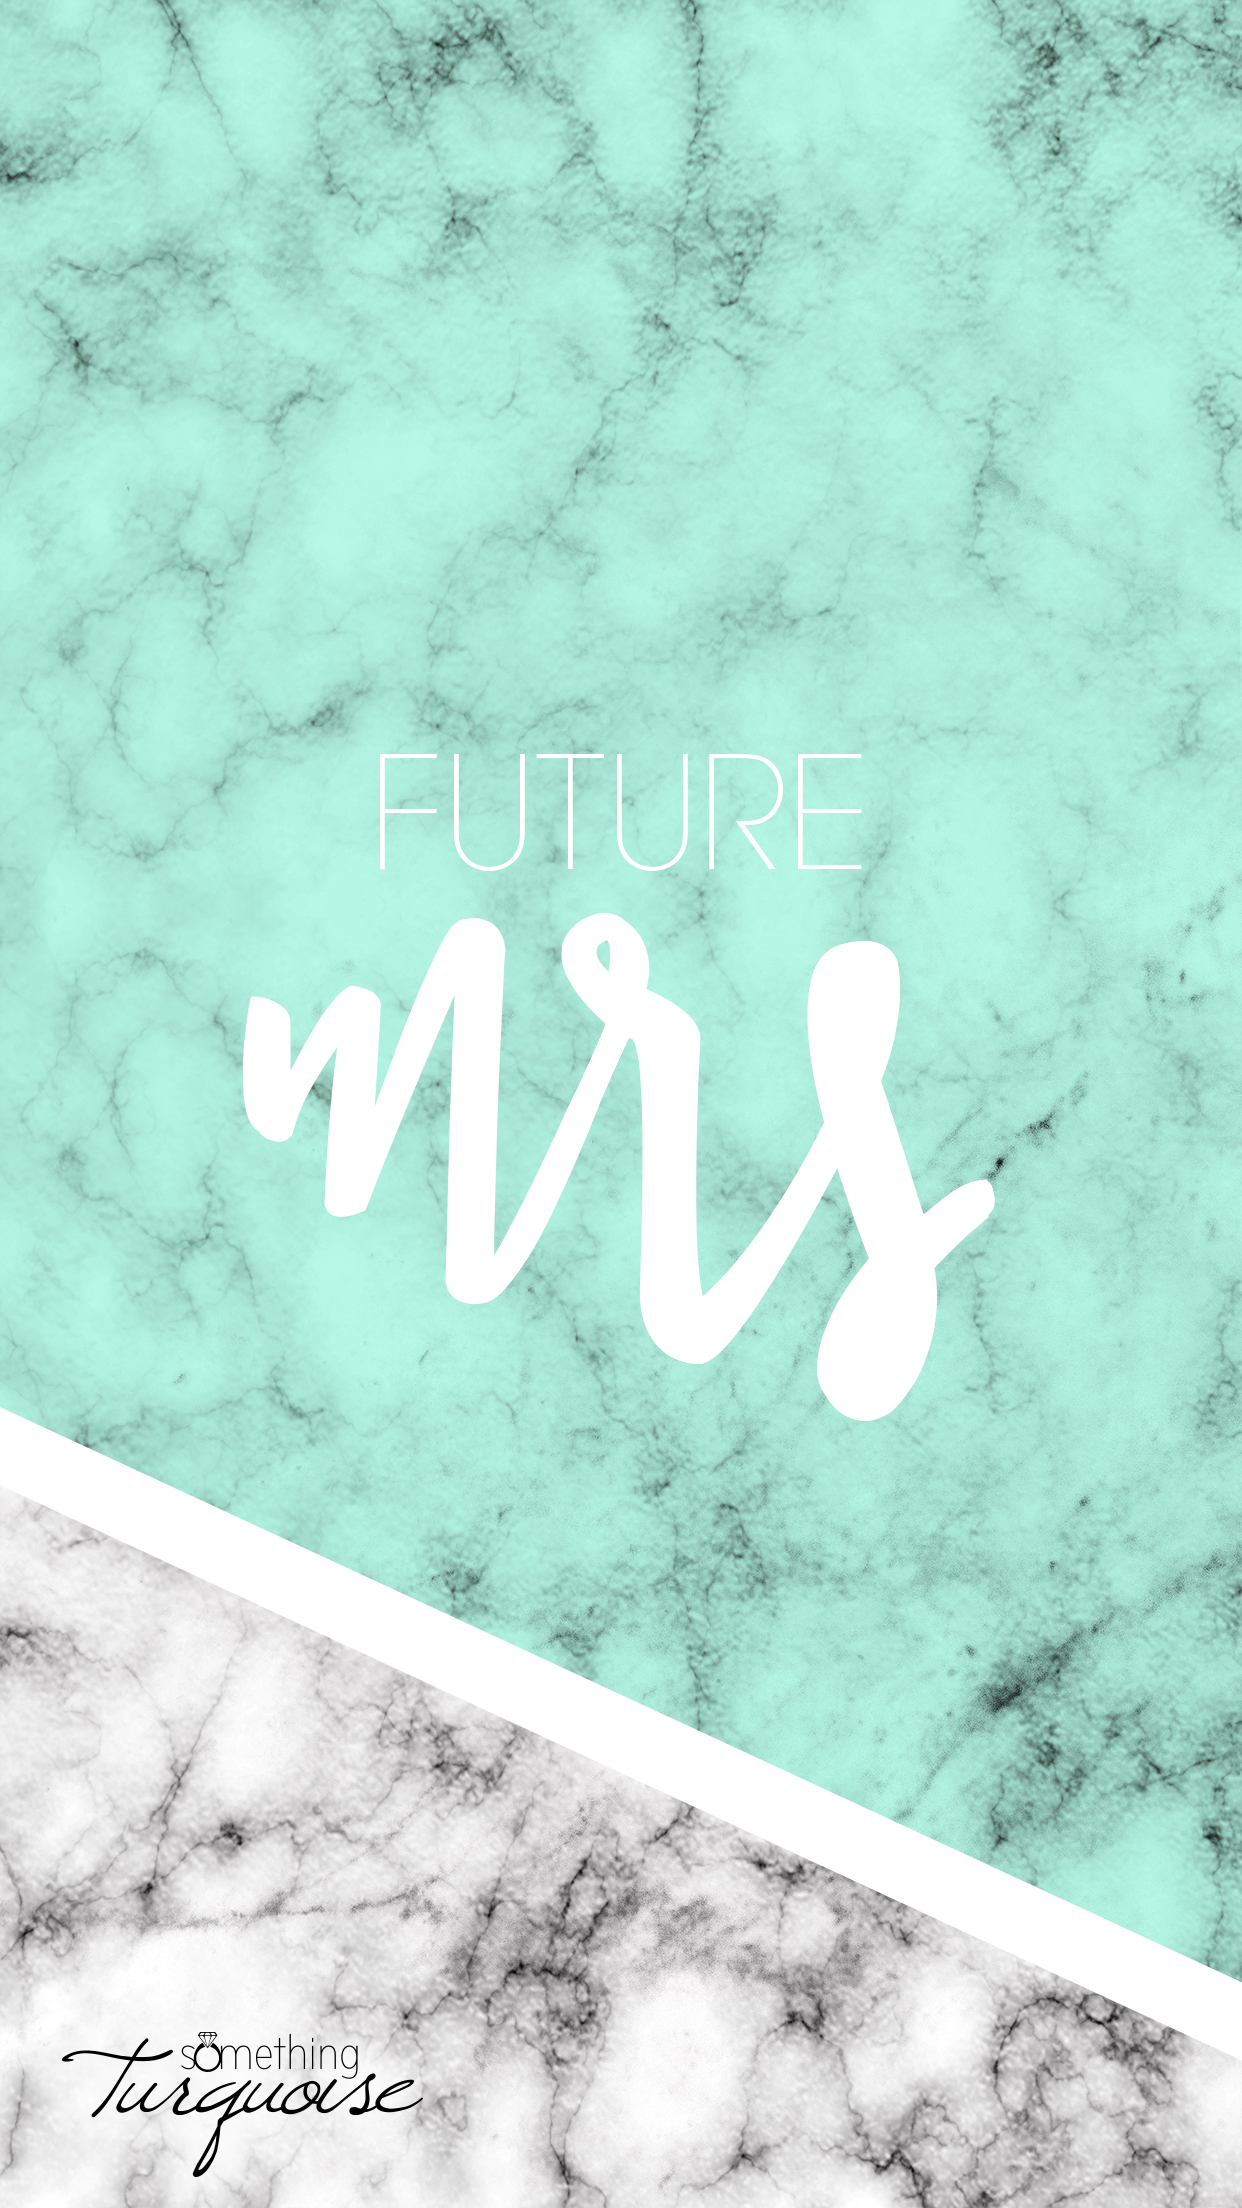 FREE mint Future Mrs iPhone wallpaper!